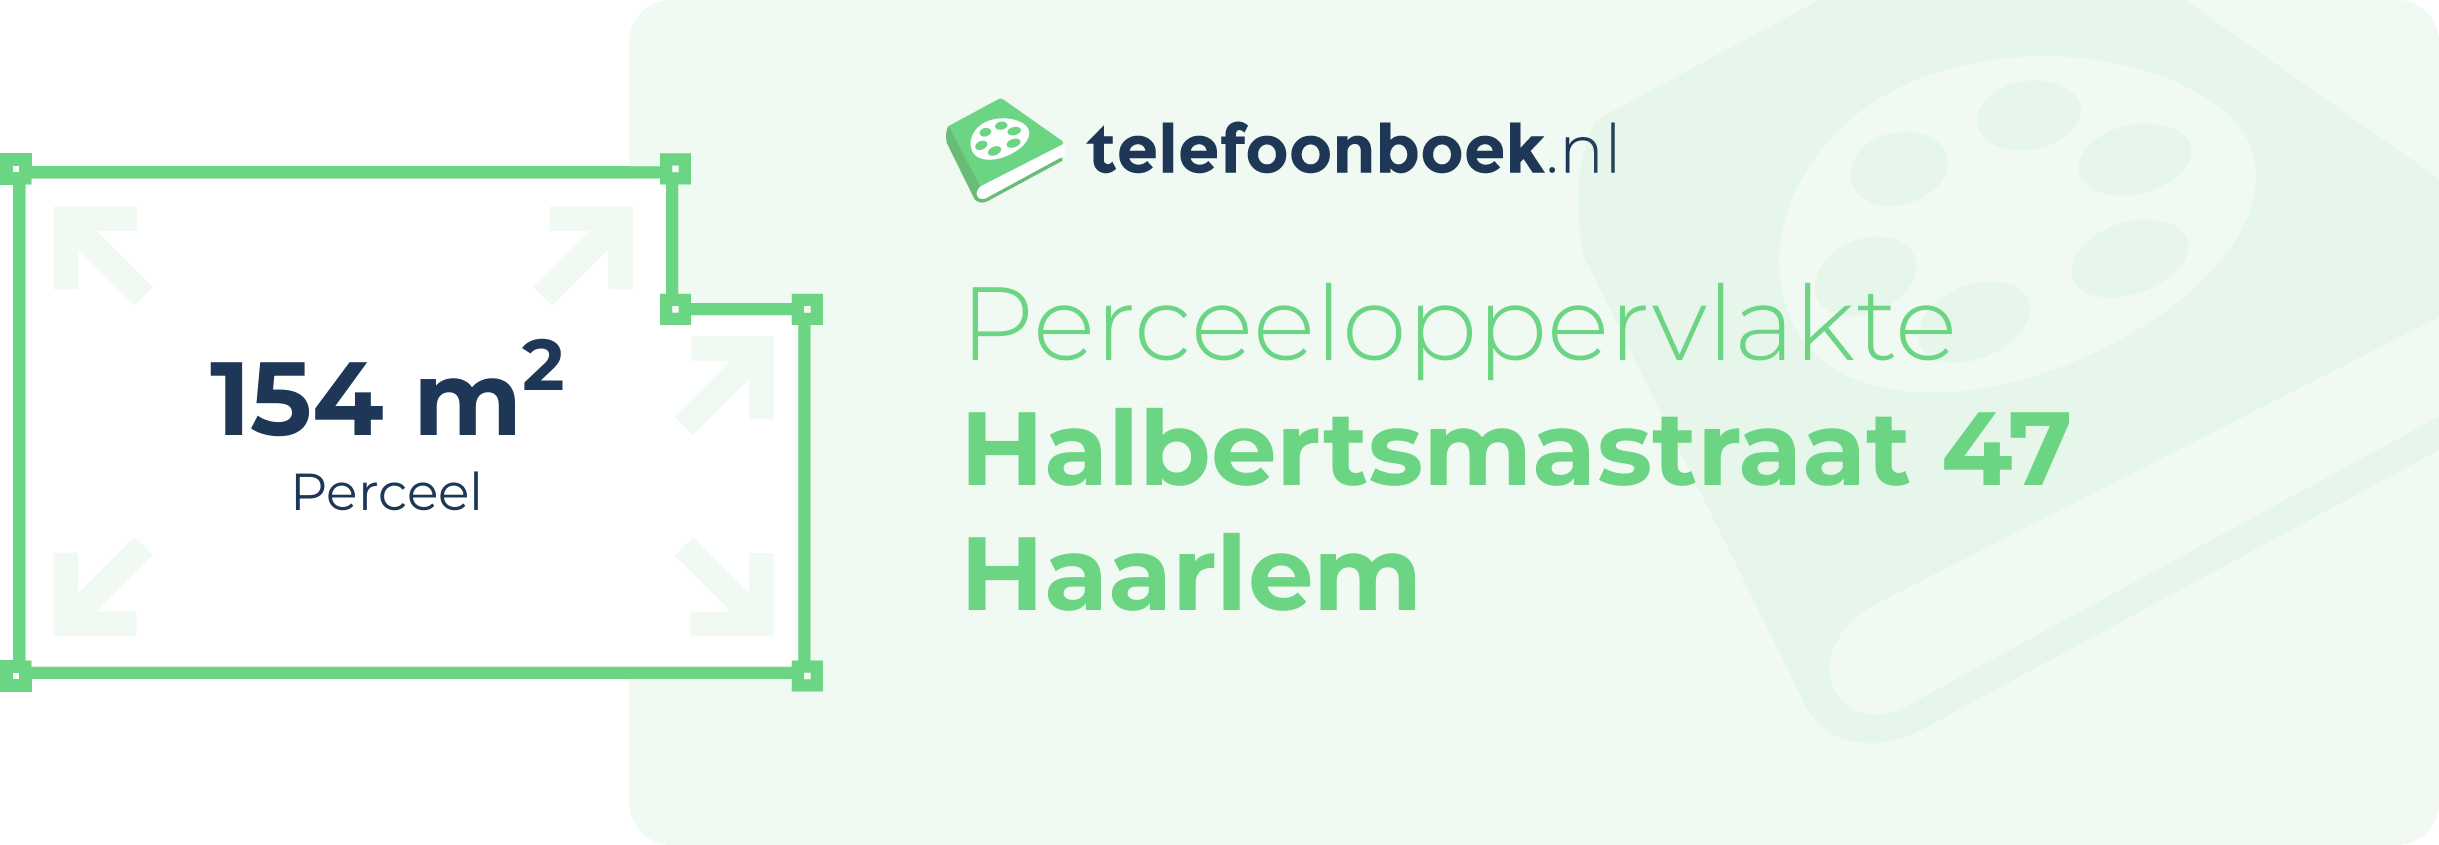 Perceeloppervlakte Halbertsmastraat 47 Haarlem